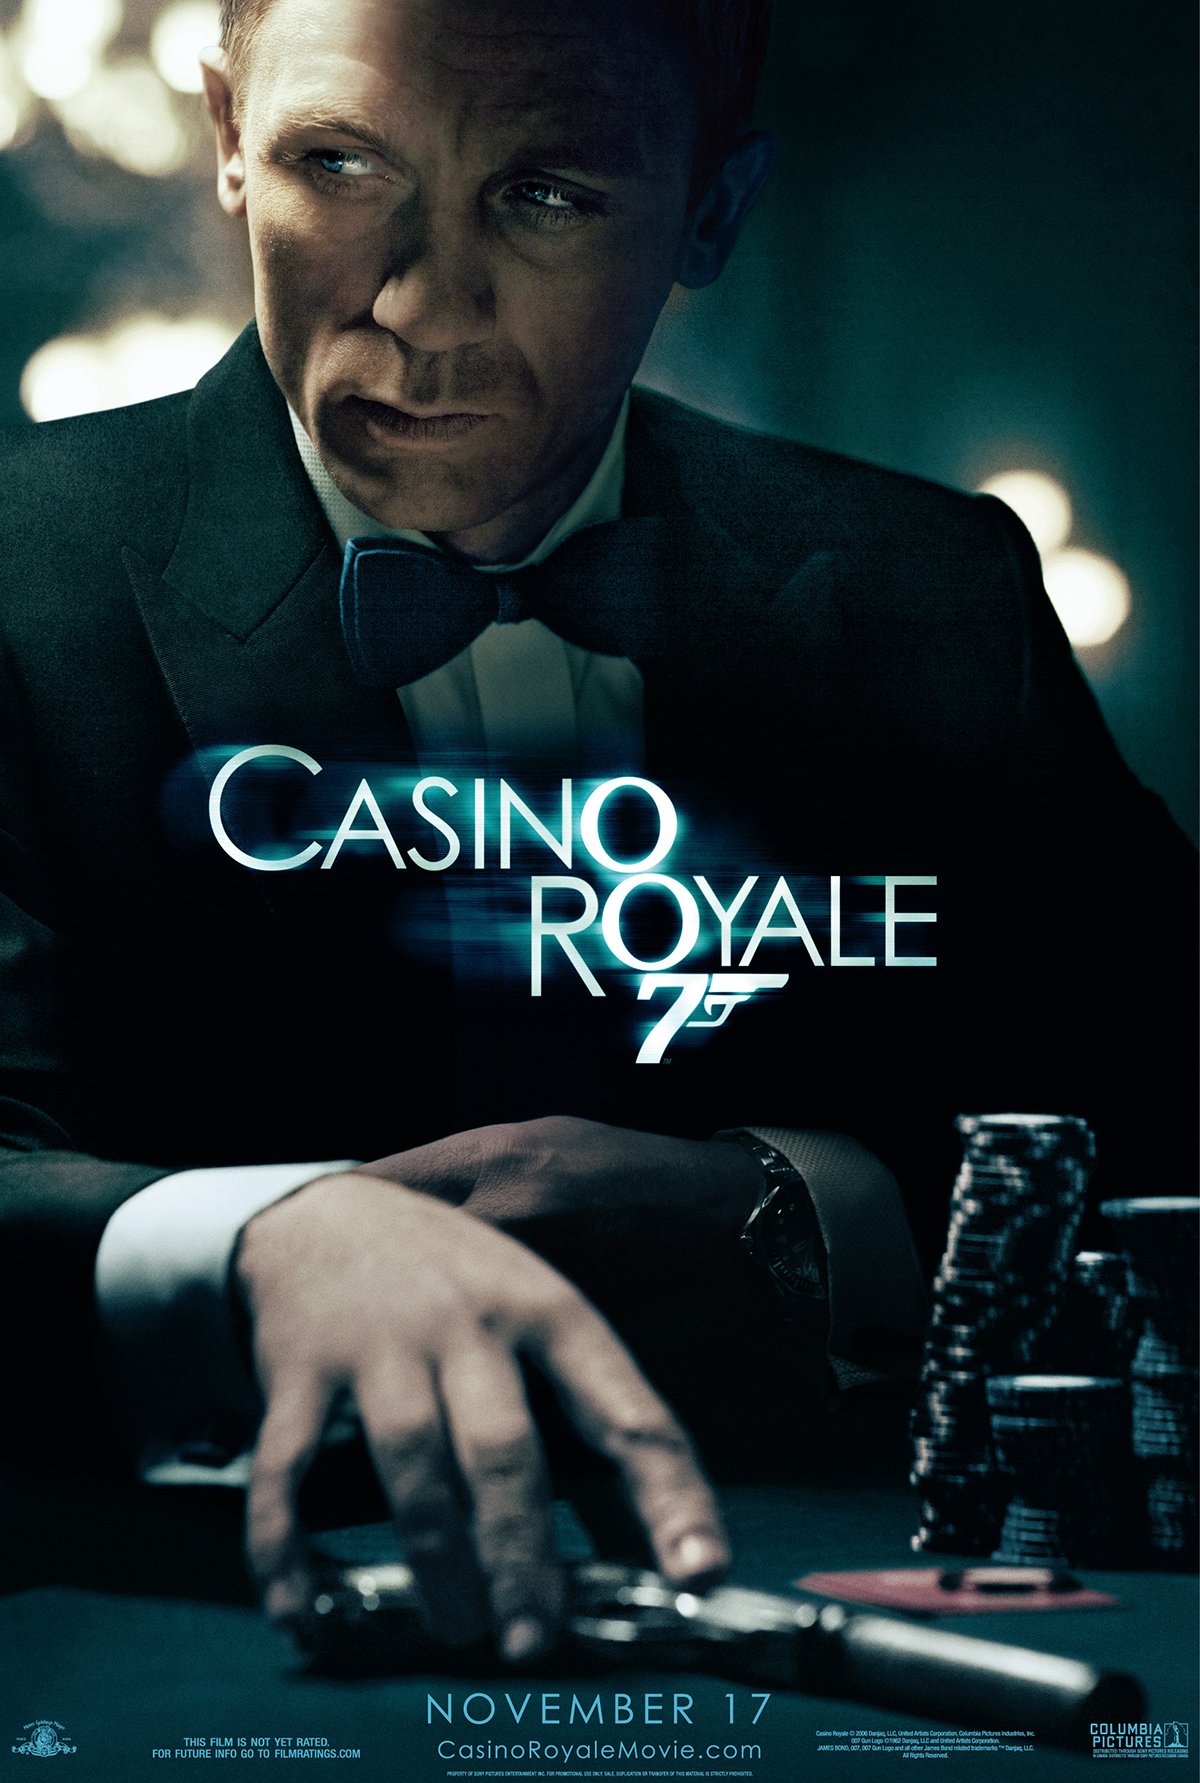 Anécdotas de la película Casino Royale - SensaCine.com